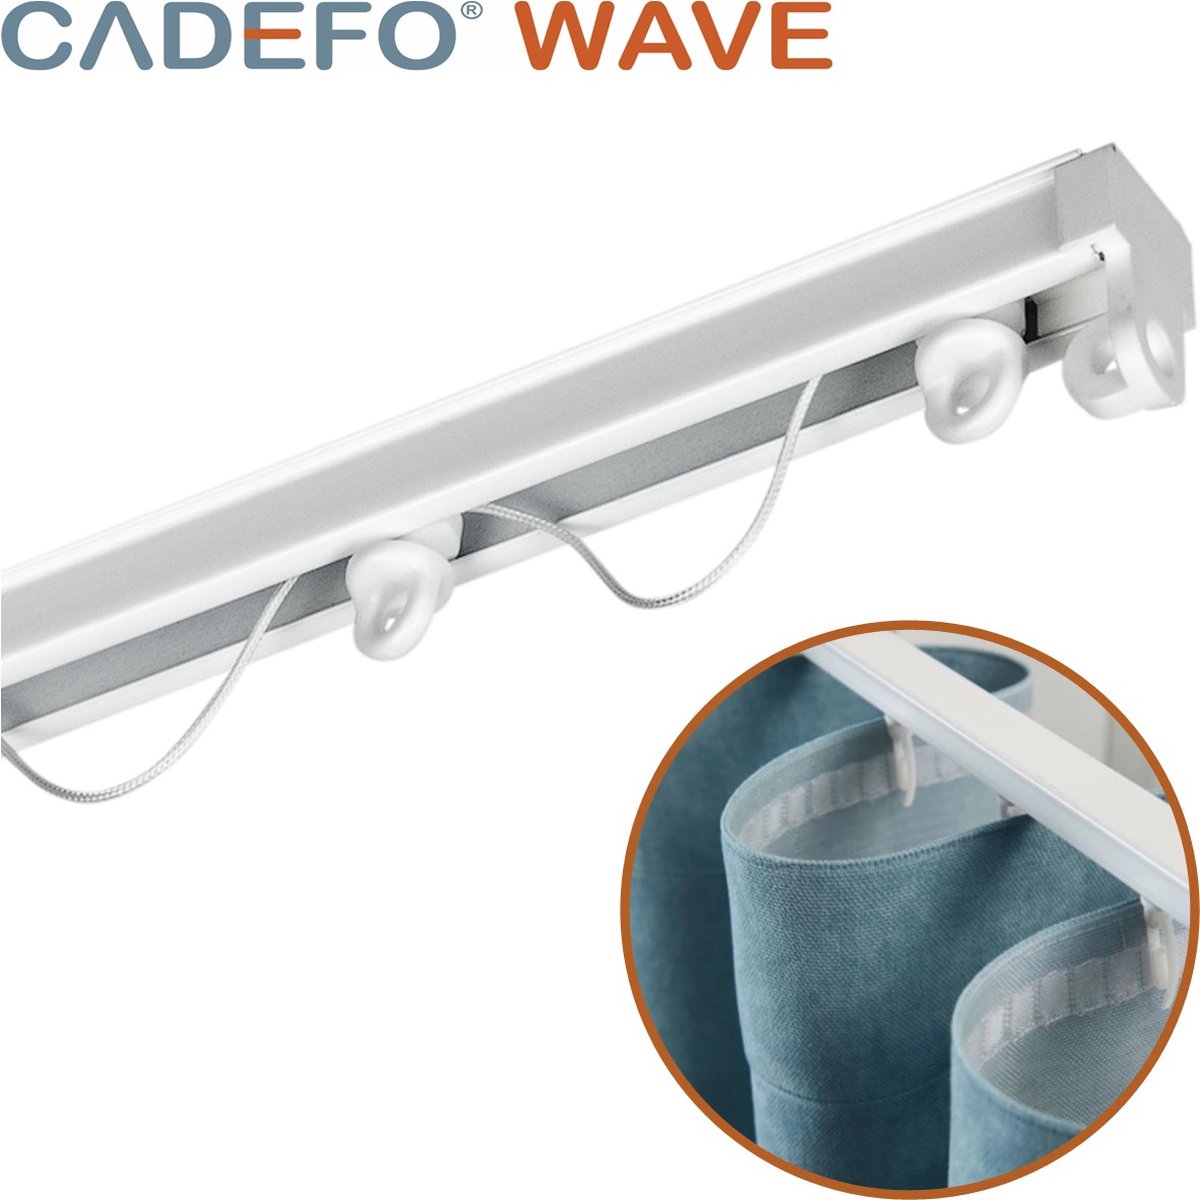 CADEFO WAVE (401 - 450 cm) Gordijnrails - Compleet op maat! - UIT 1 STUK - Leverbaar tot 6 meter - Plafondbevestiging - Lengte 416 cm